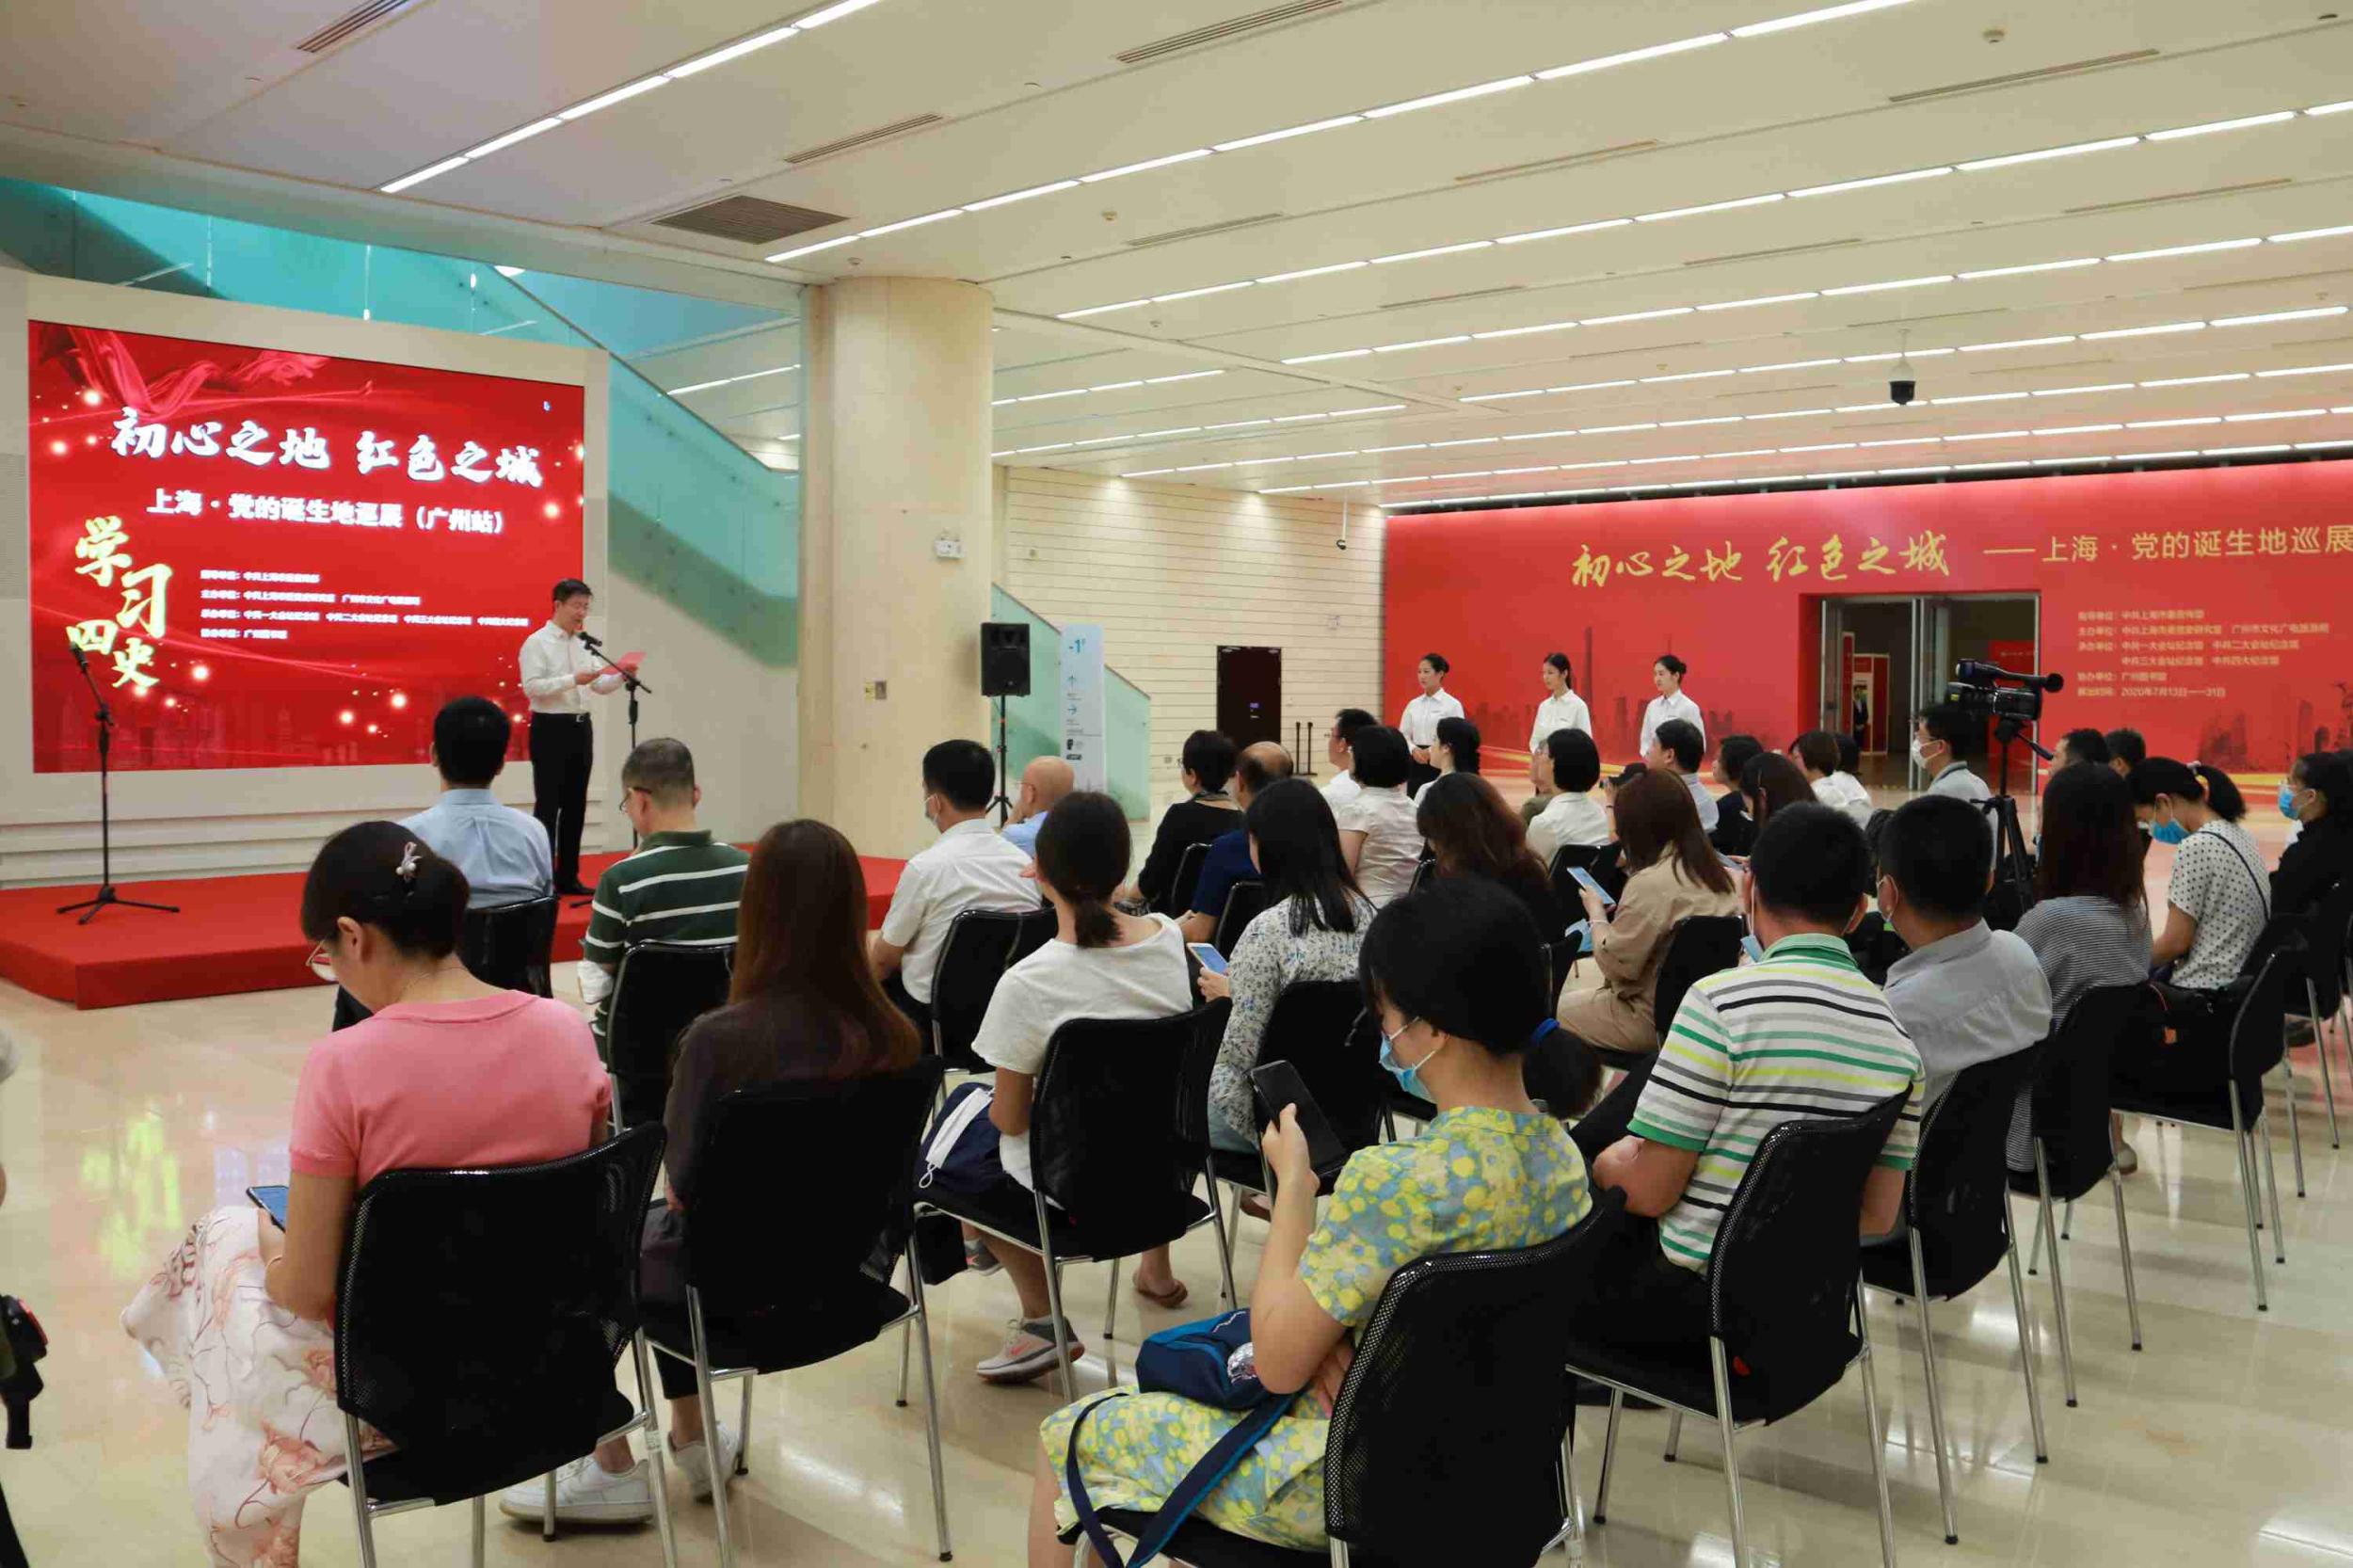 “初心之地 红色之城——上海•党的诞生地巡展”（广州站）开幕